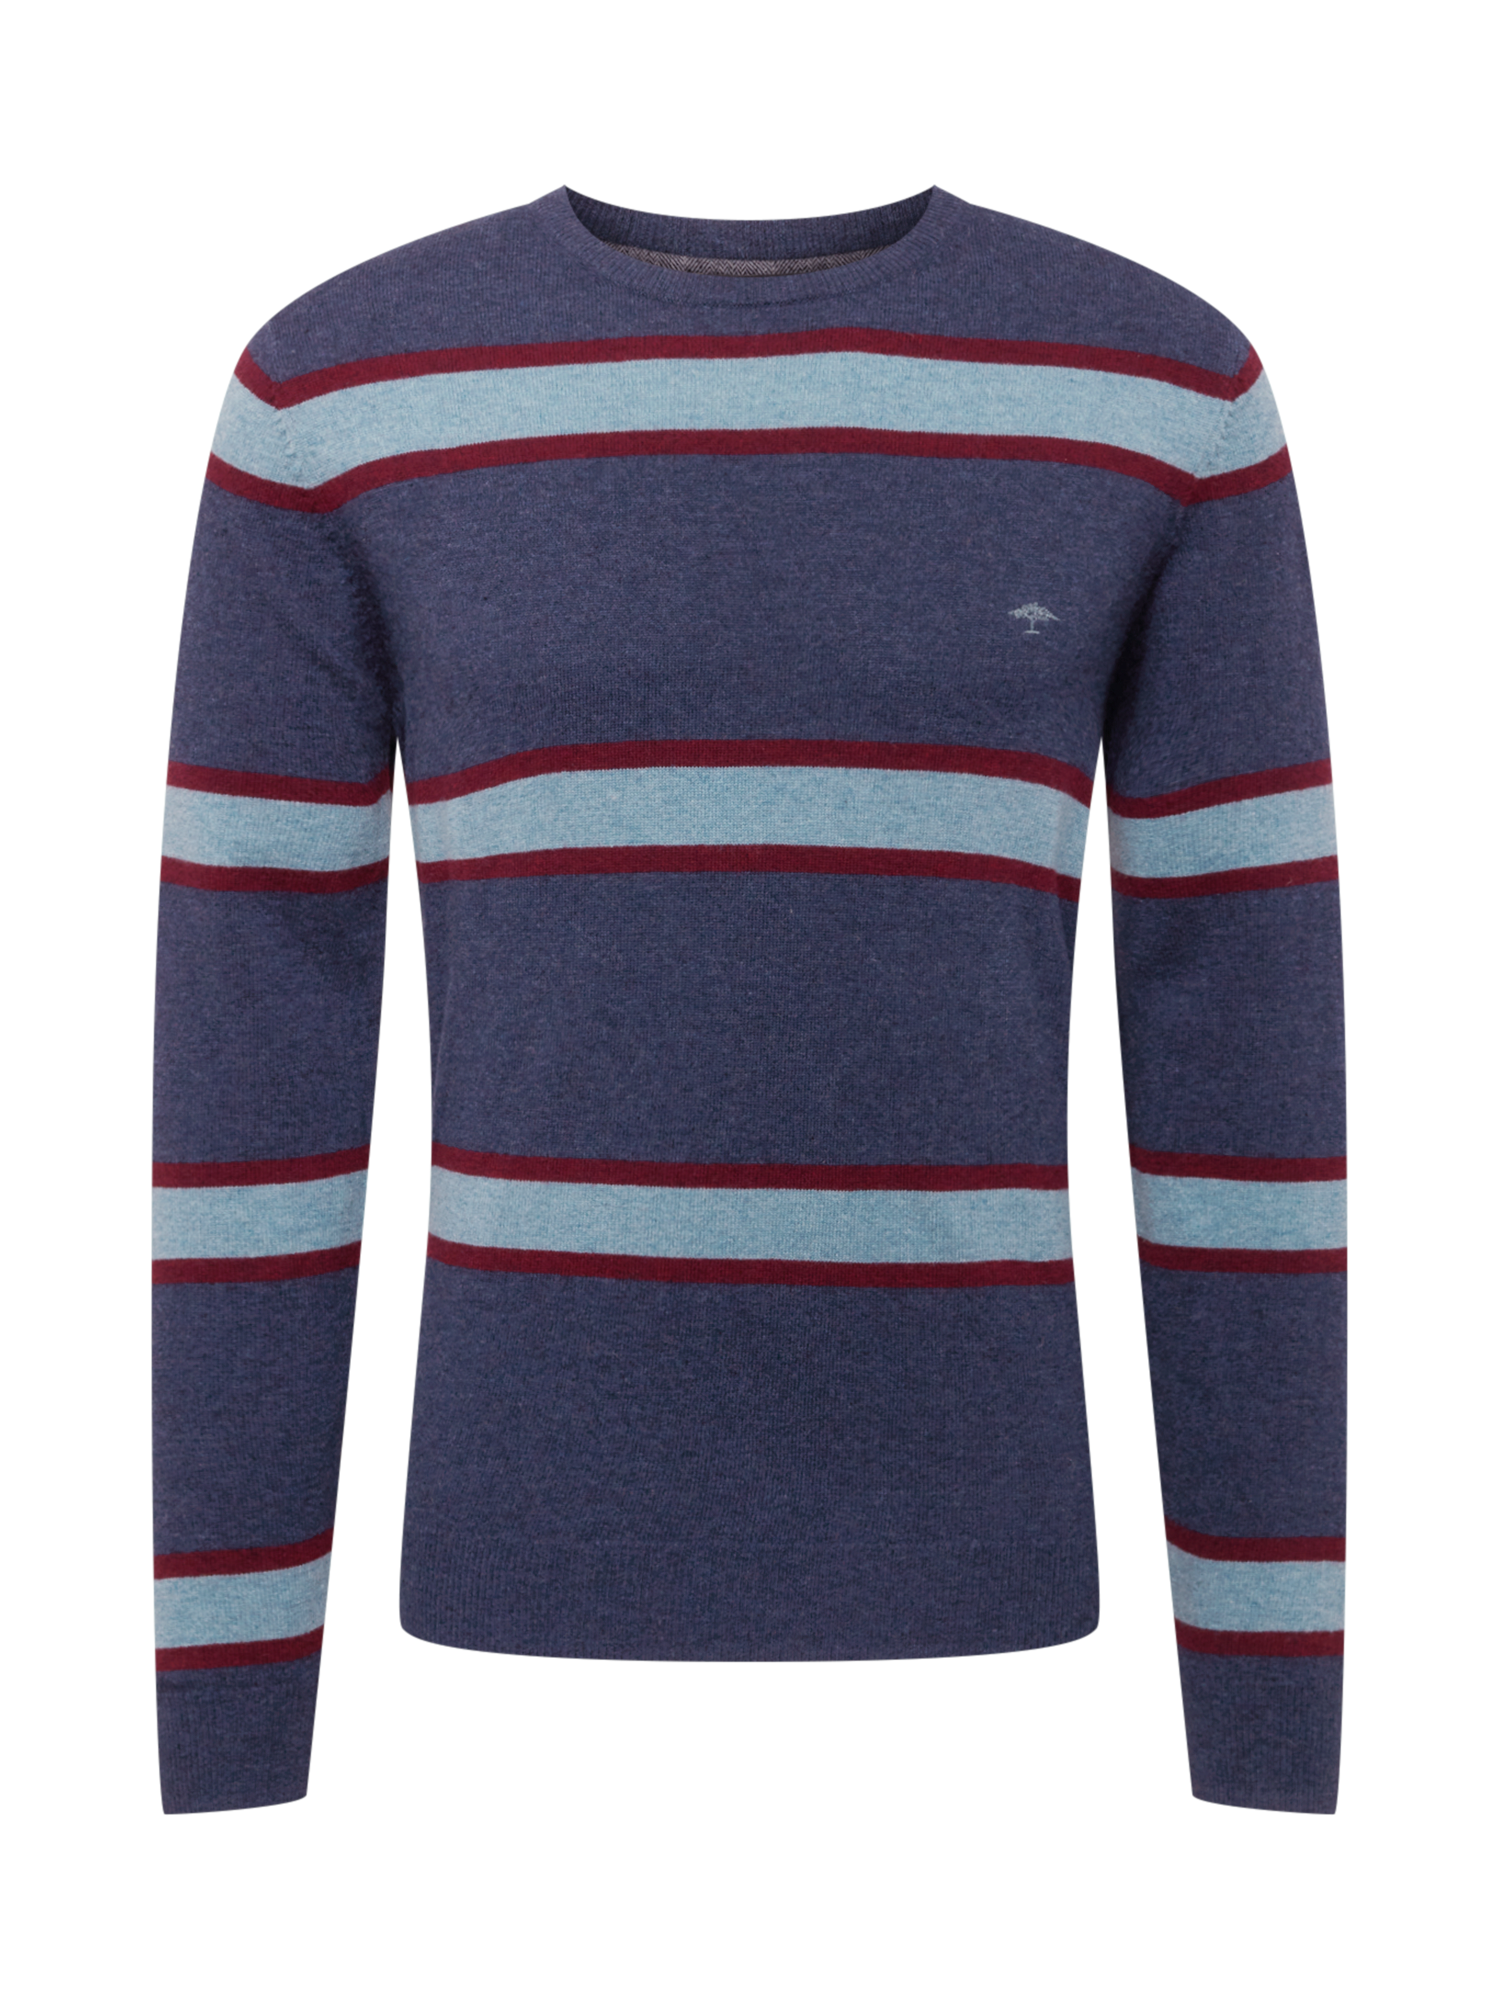 FYNCH-HATTON Sweter w kolorze Jasnoniebieski, Granatowym 